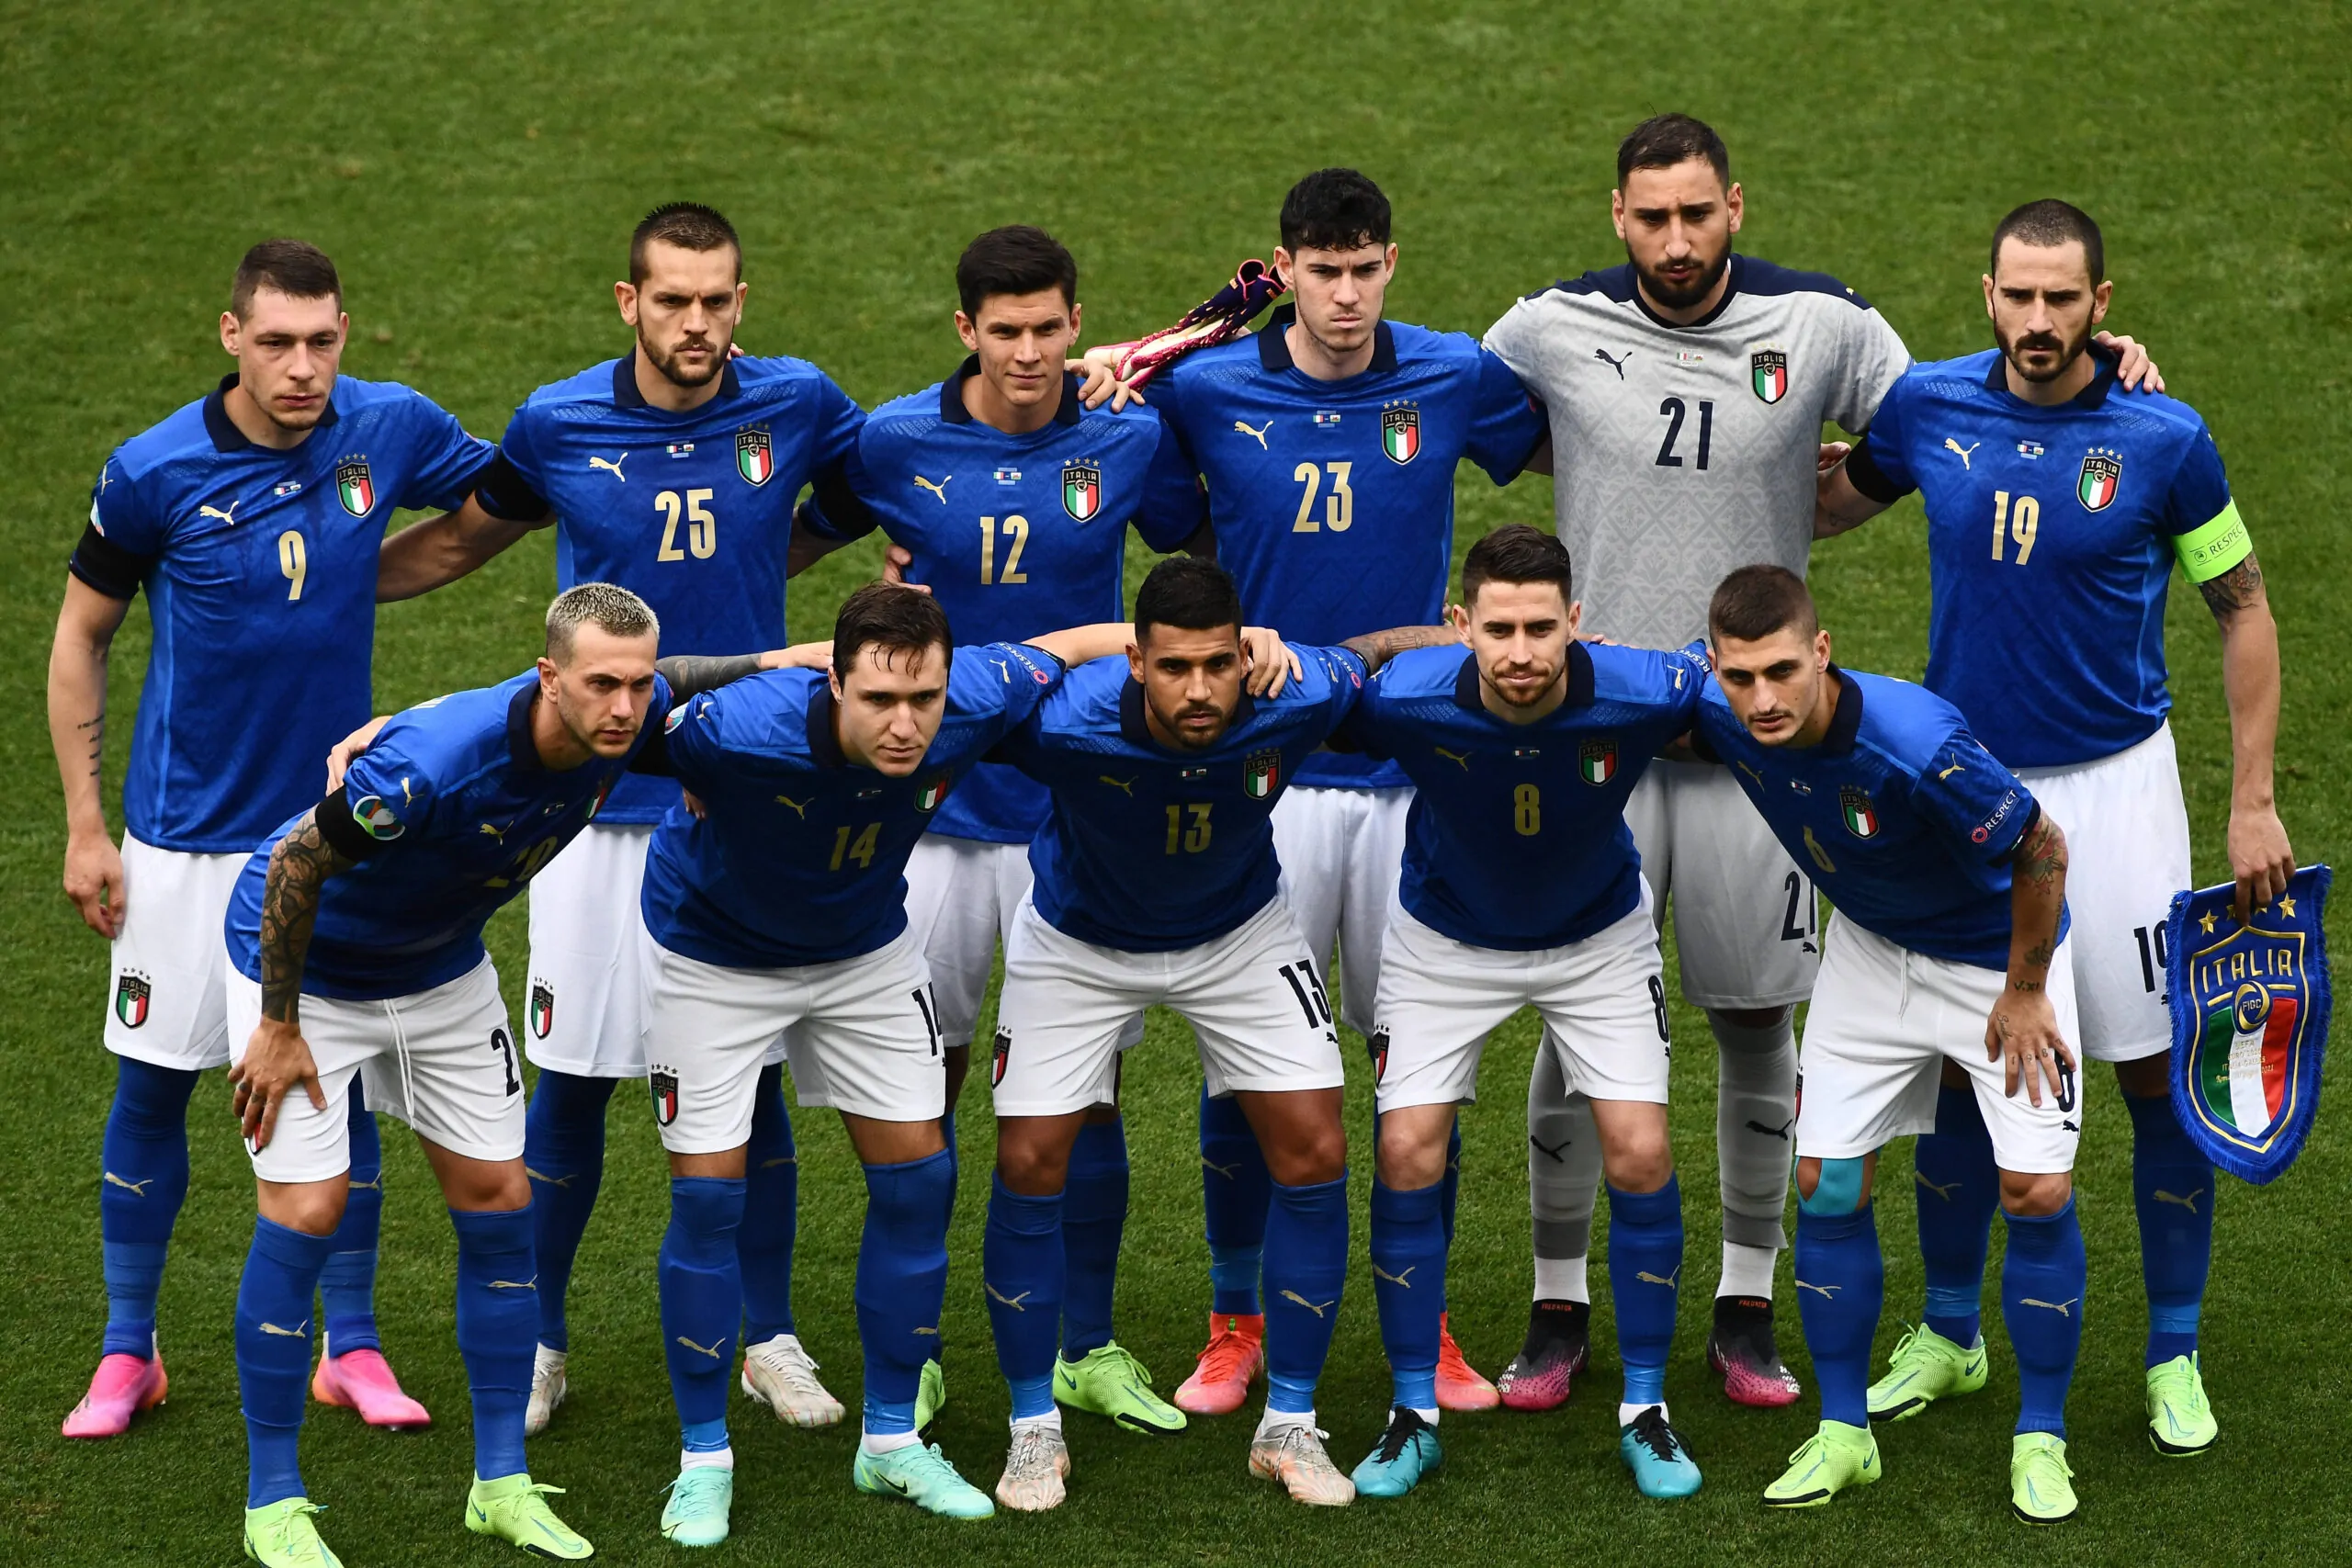 Finale Italia-Inghilterra, inglesi favoriti a 2,55. Azzurri quotati a 3,00